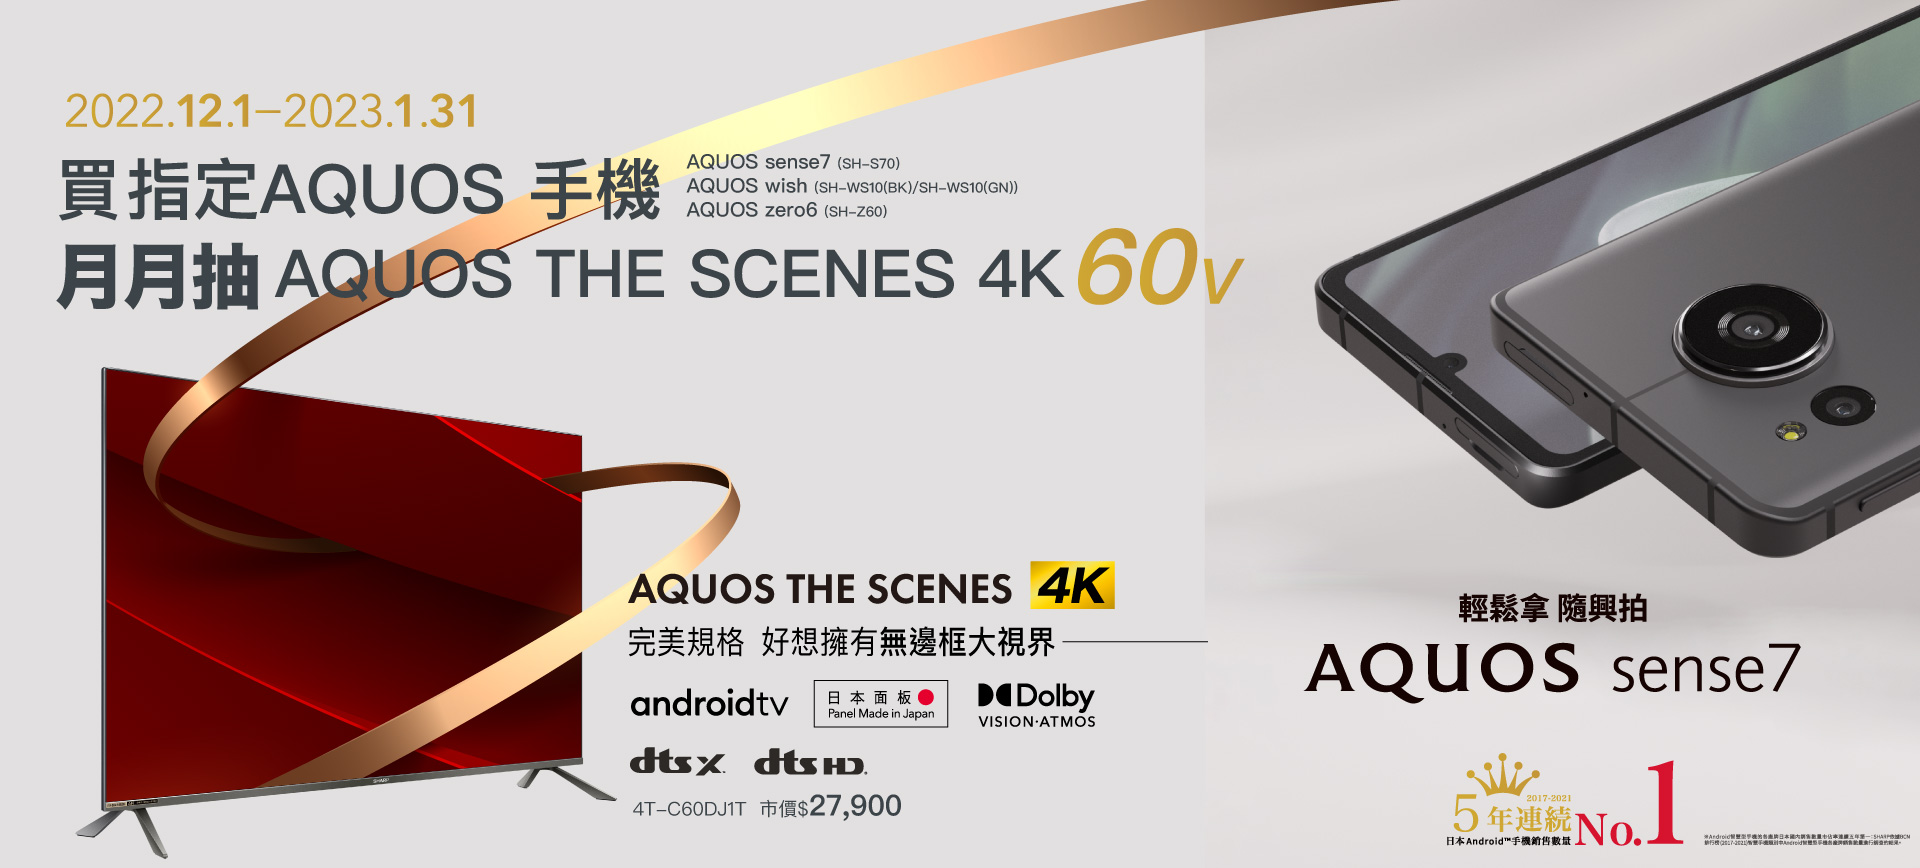 歡慶AQUOS sense7 新手機上市! 買指定AQUOS手機月月抽「SHARP AQUOS 4K